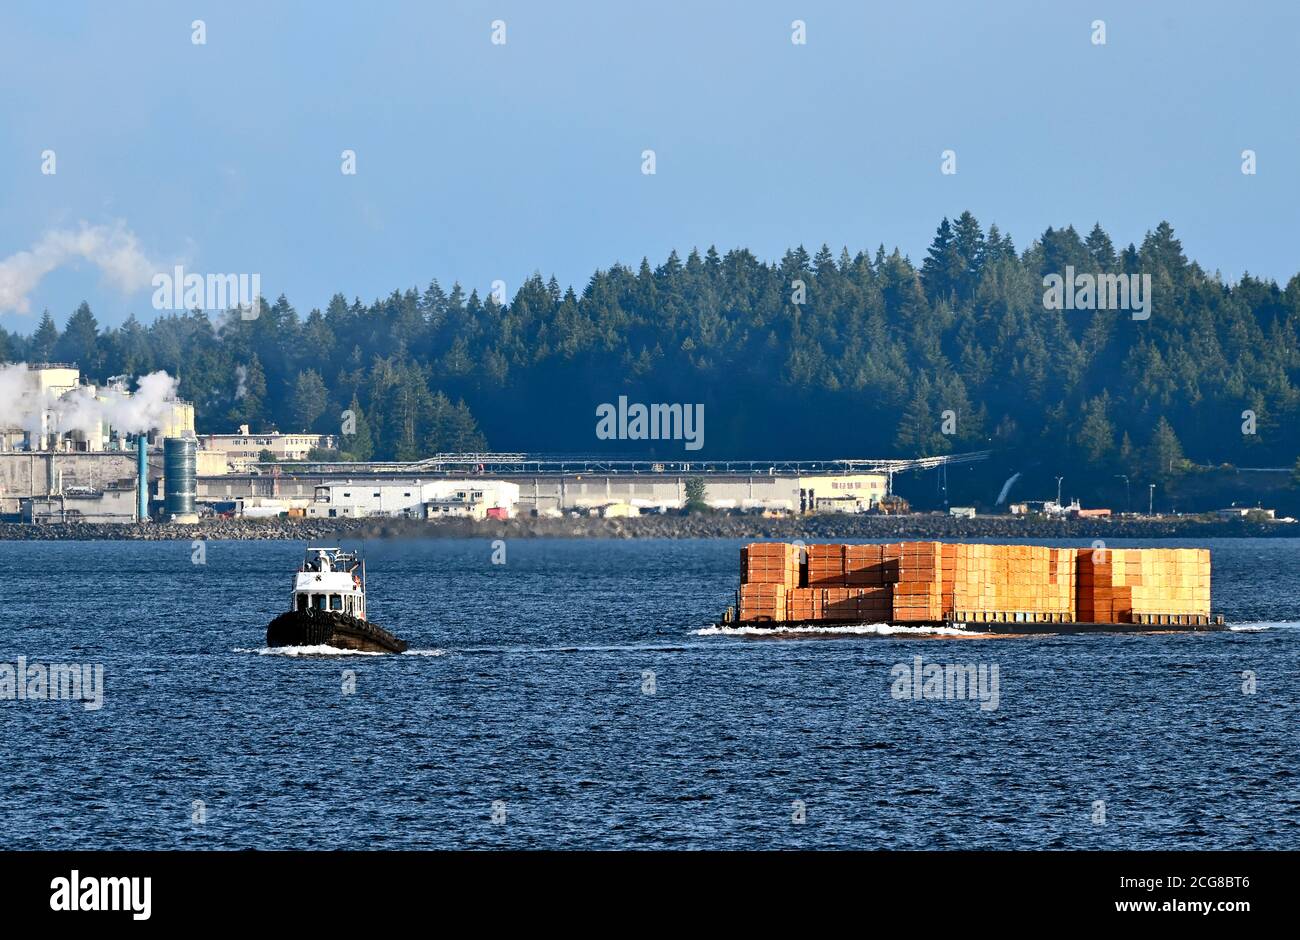 Un remolcador en funcionamiento que tira de una carga de productos de capas a través del puerto en Nanaimo en la Isla de Vancouver British Columbia Canadá. Foto de stock